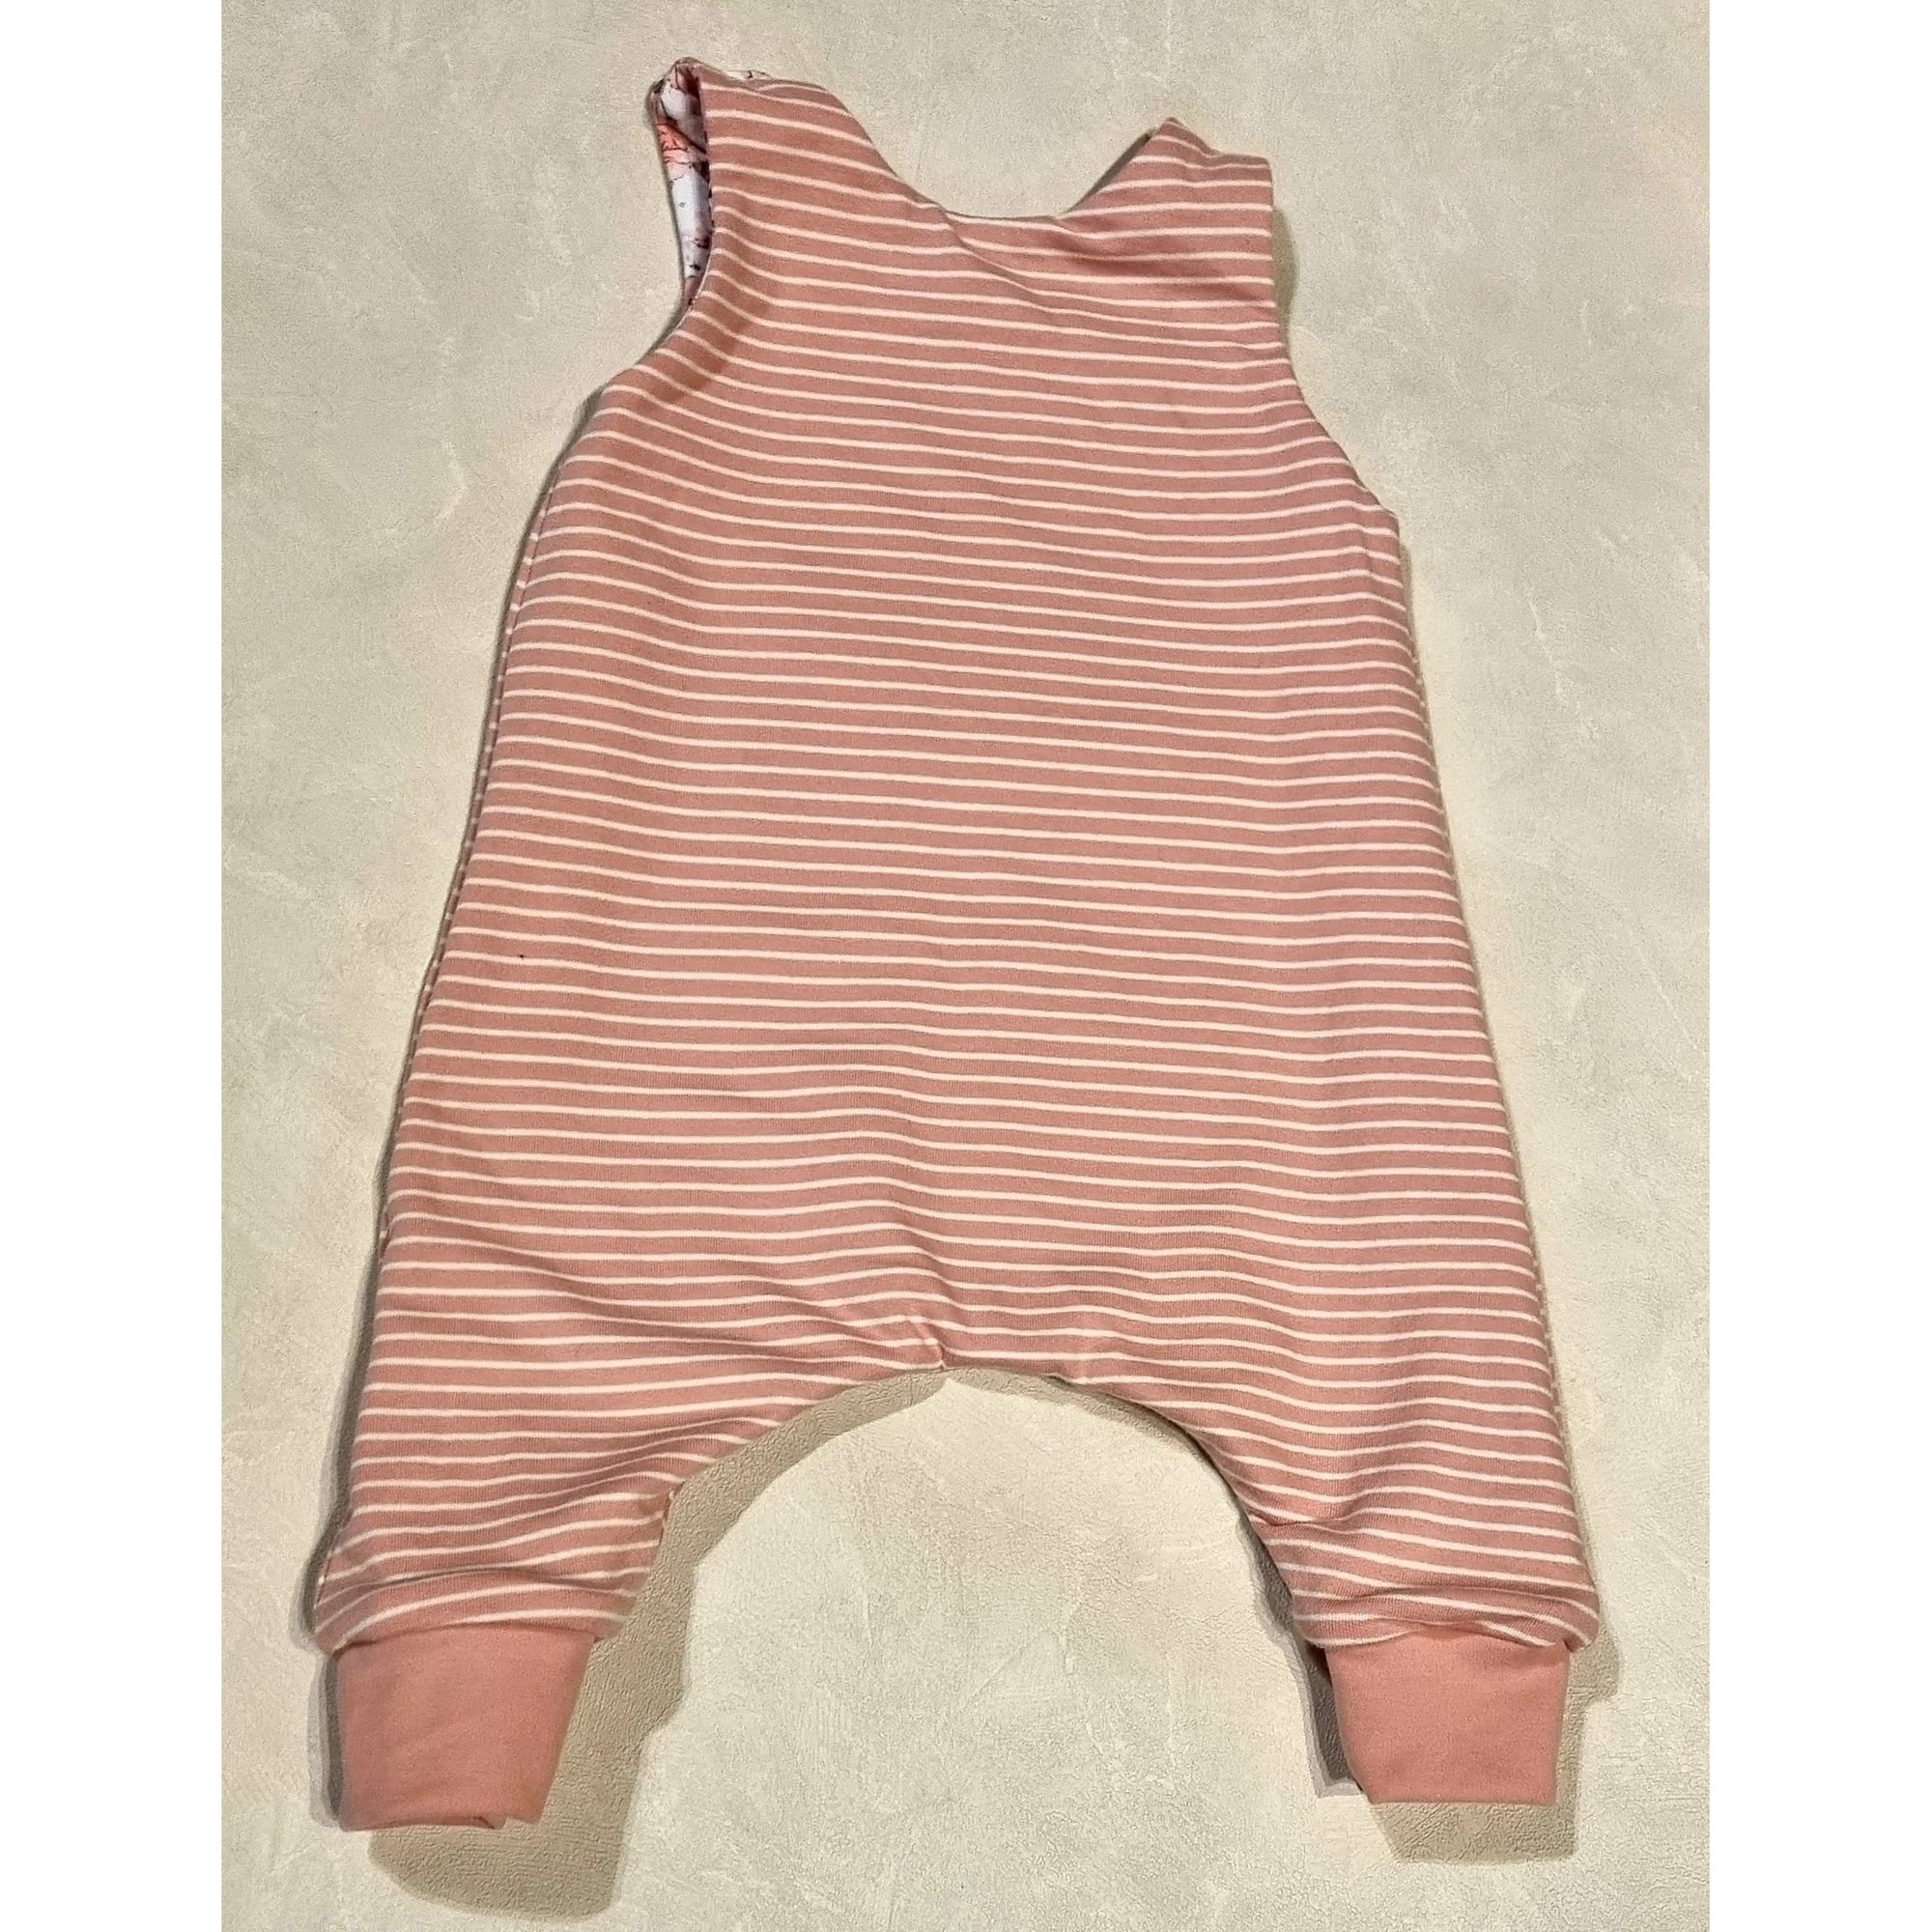 Reversible Overalls - Pink Floral / Pink Stripe Kode Kids